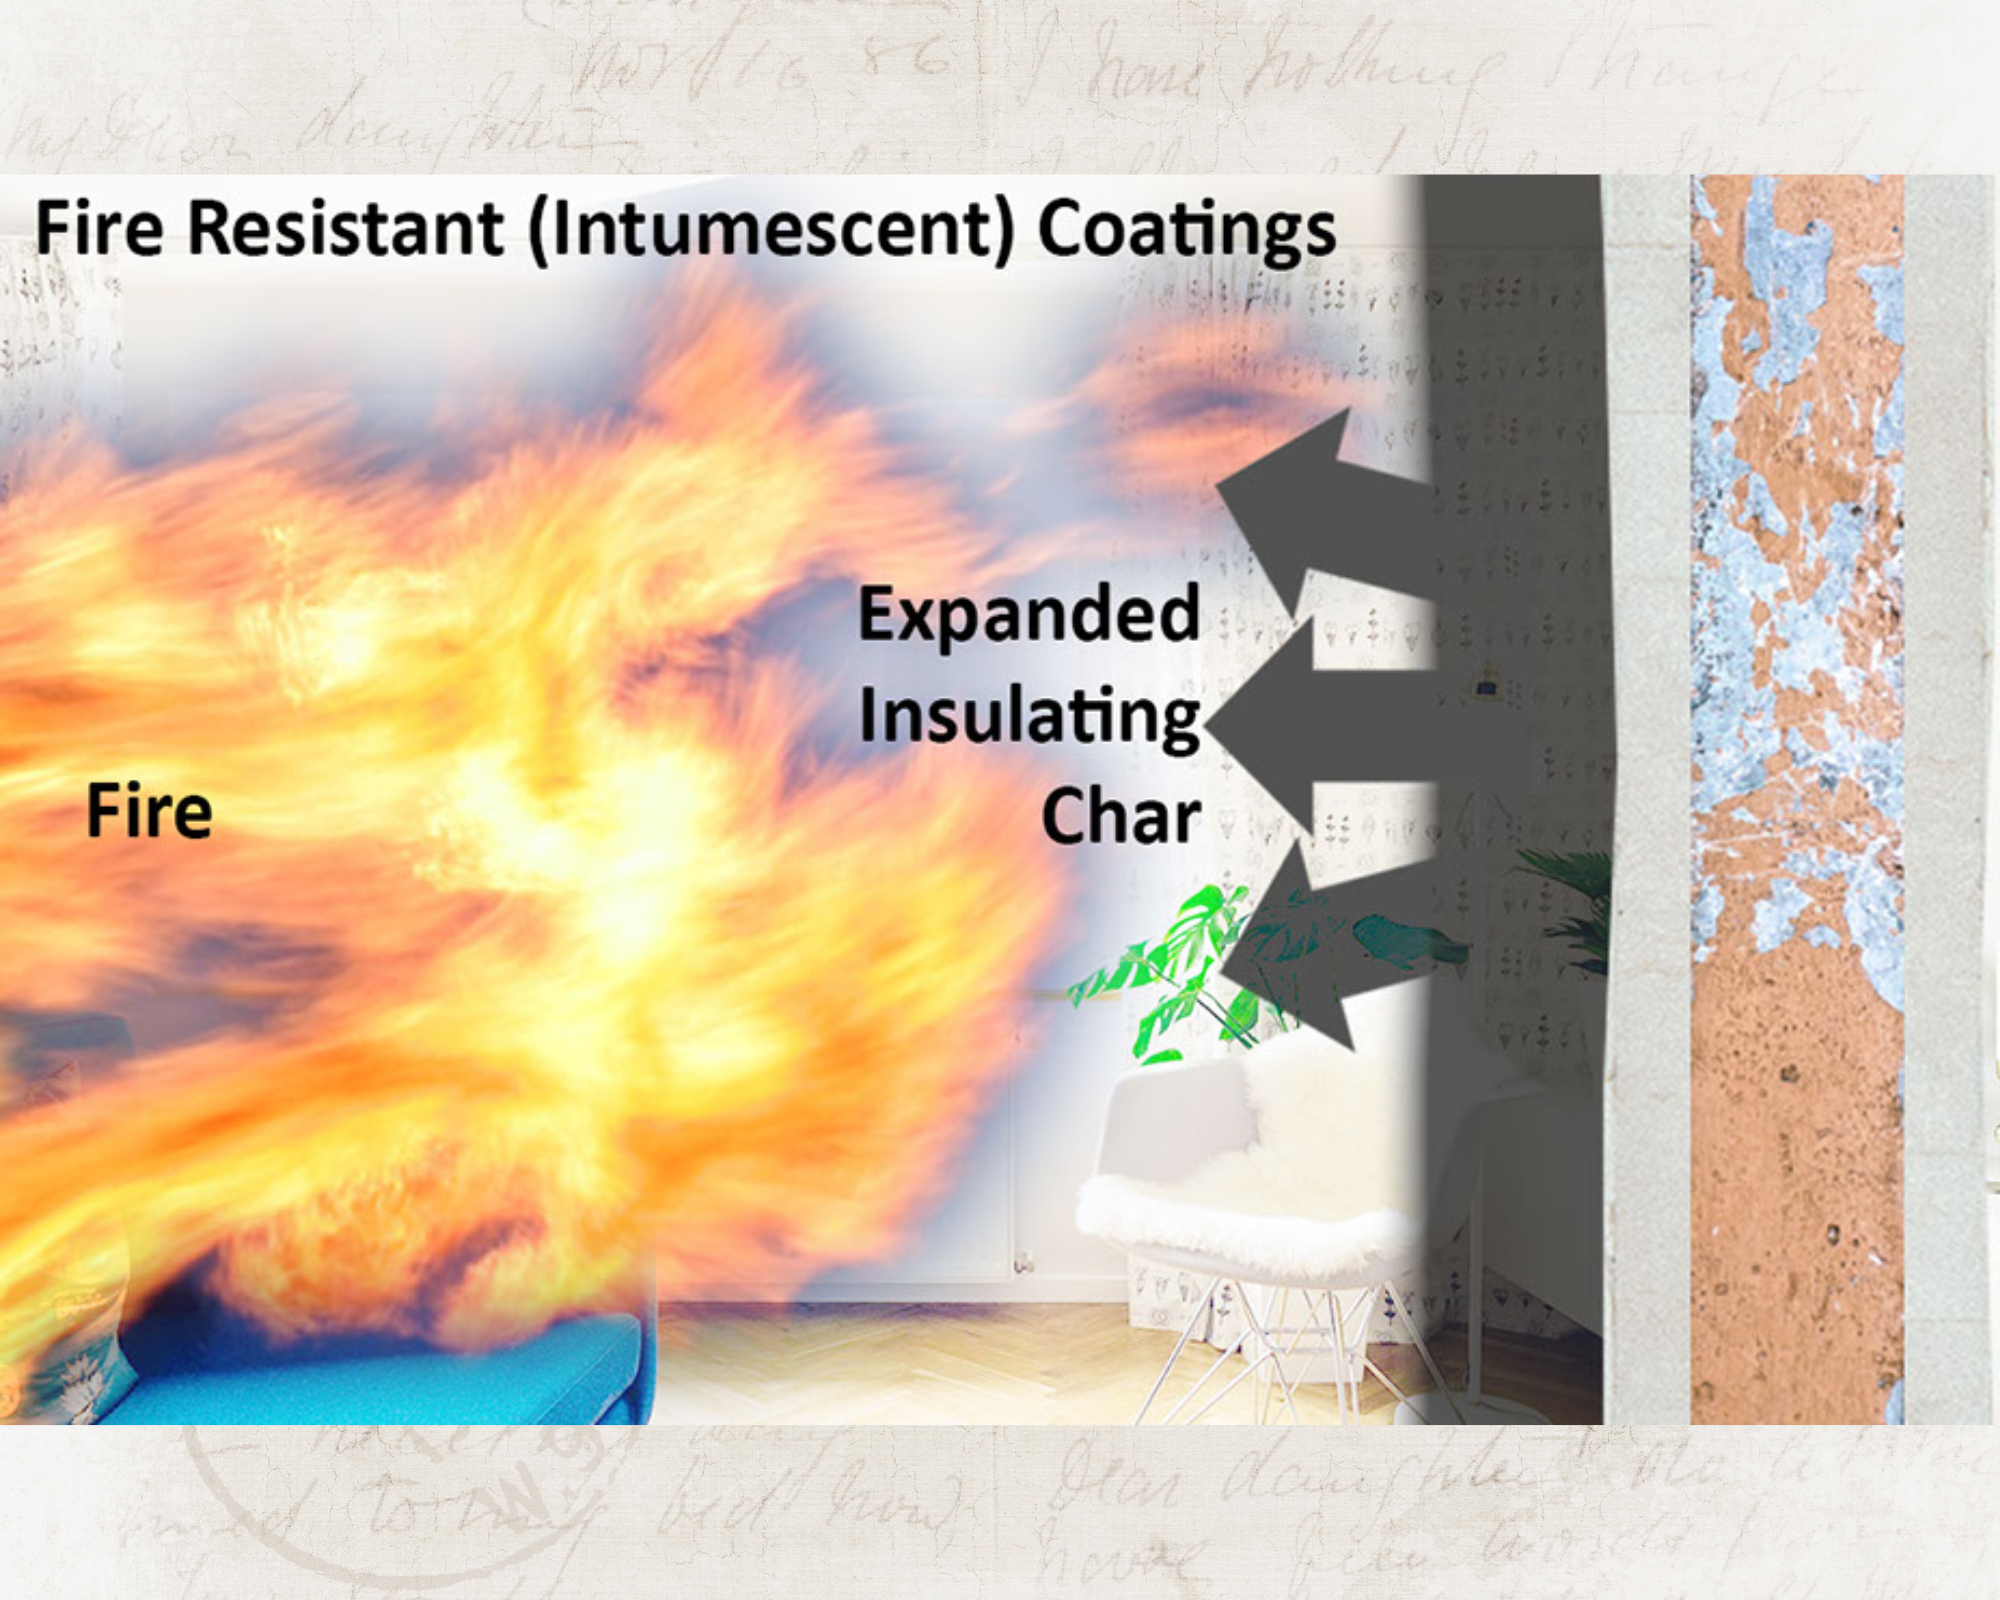 Revestimiento y pintura Protección contra incendios: aprovechamiento de los efectos sinérgicos de los retardadores de llama intumescentes